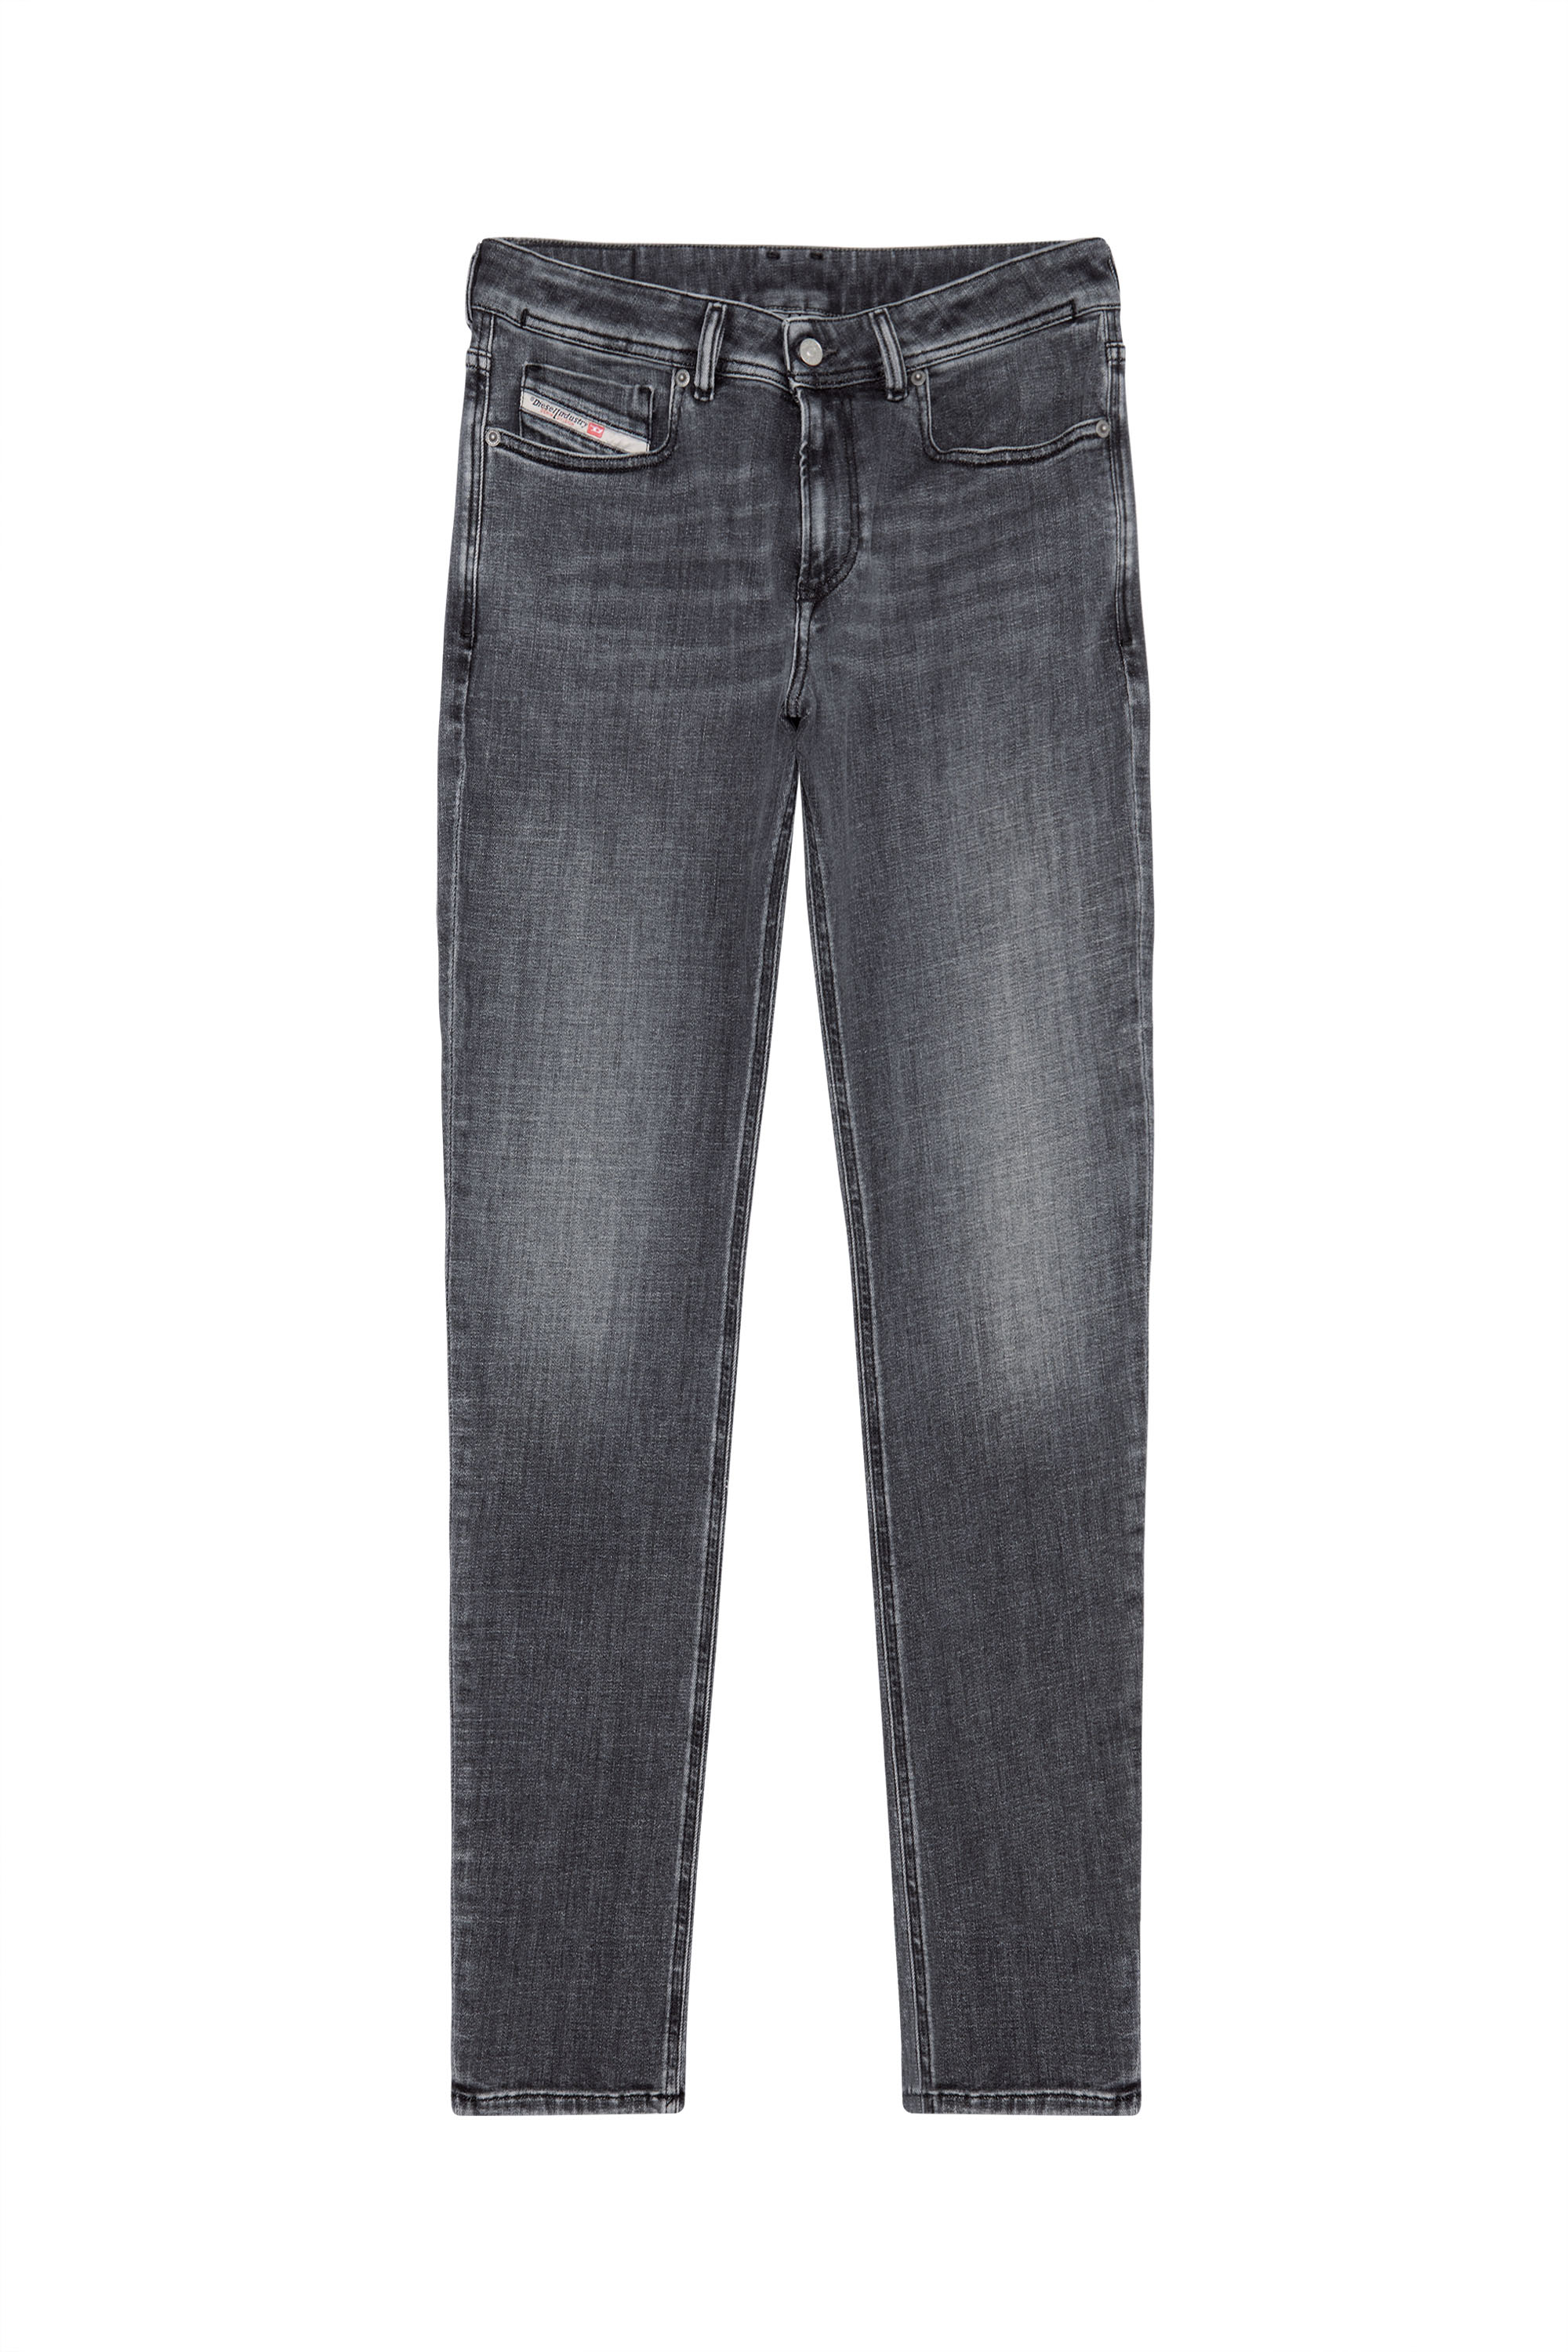 Diesel jeans slim fit - Die hochwertigsten Diesel jeans slim fit verglichen!